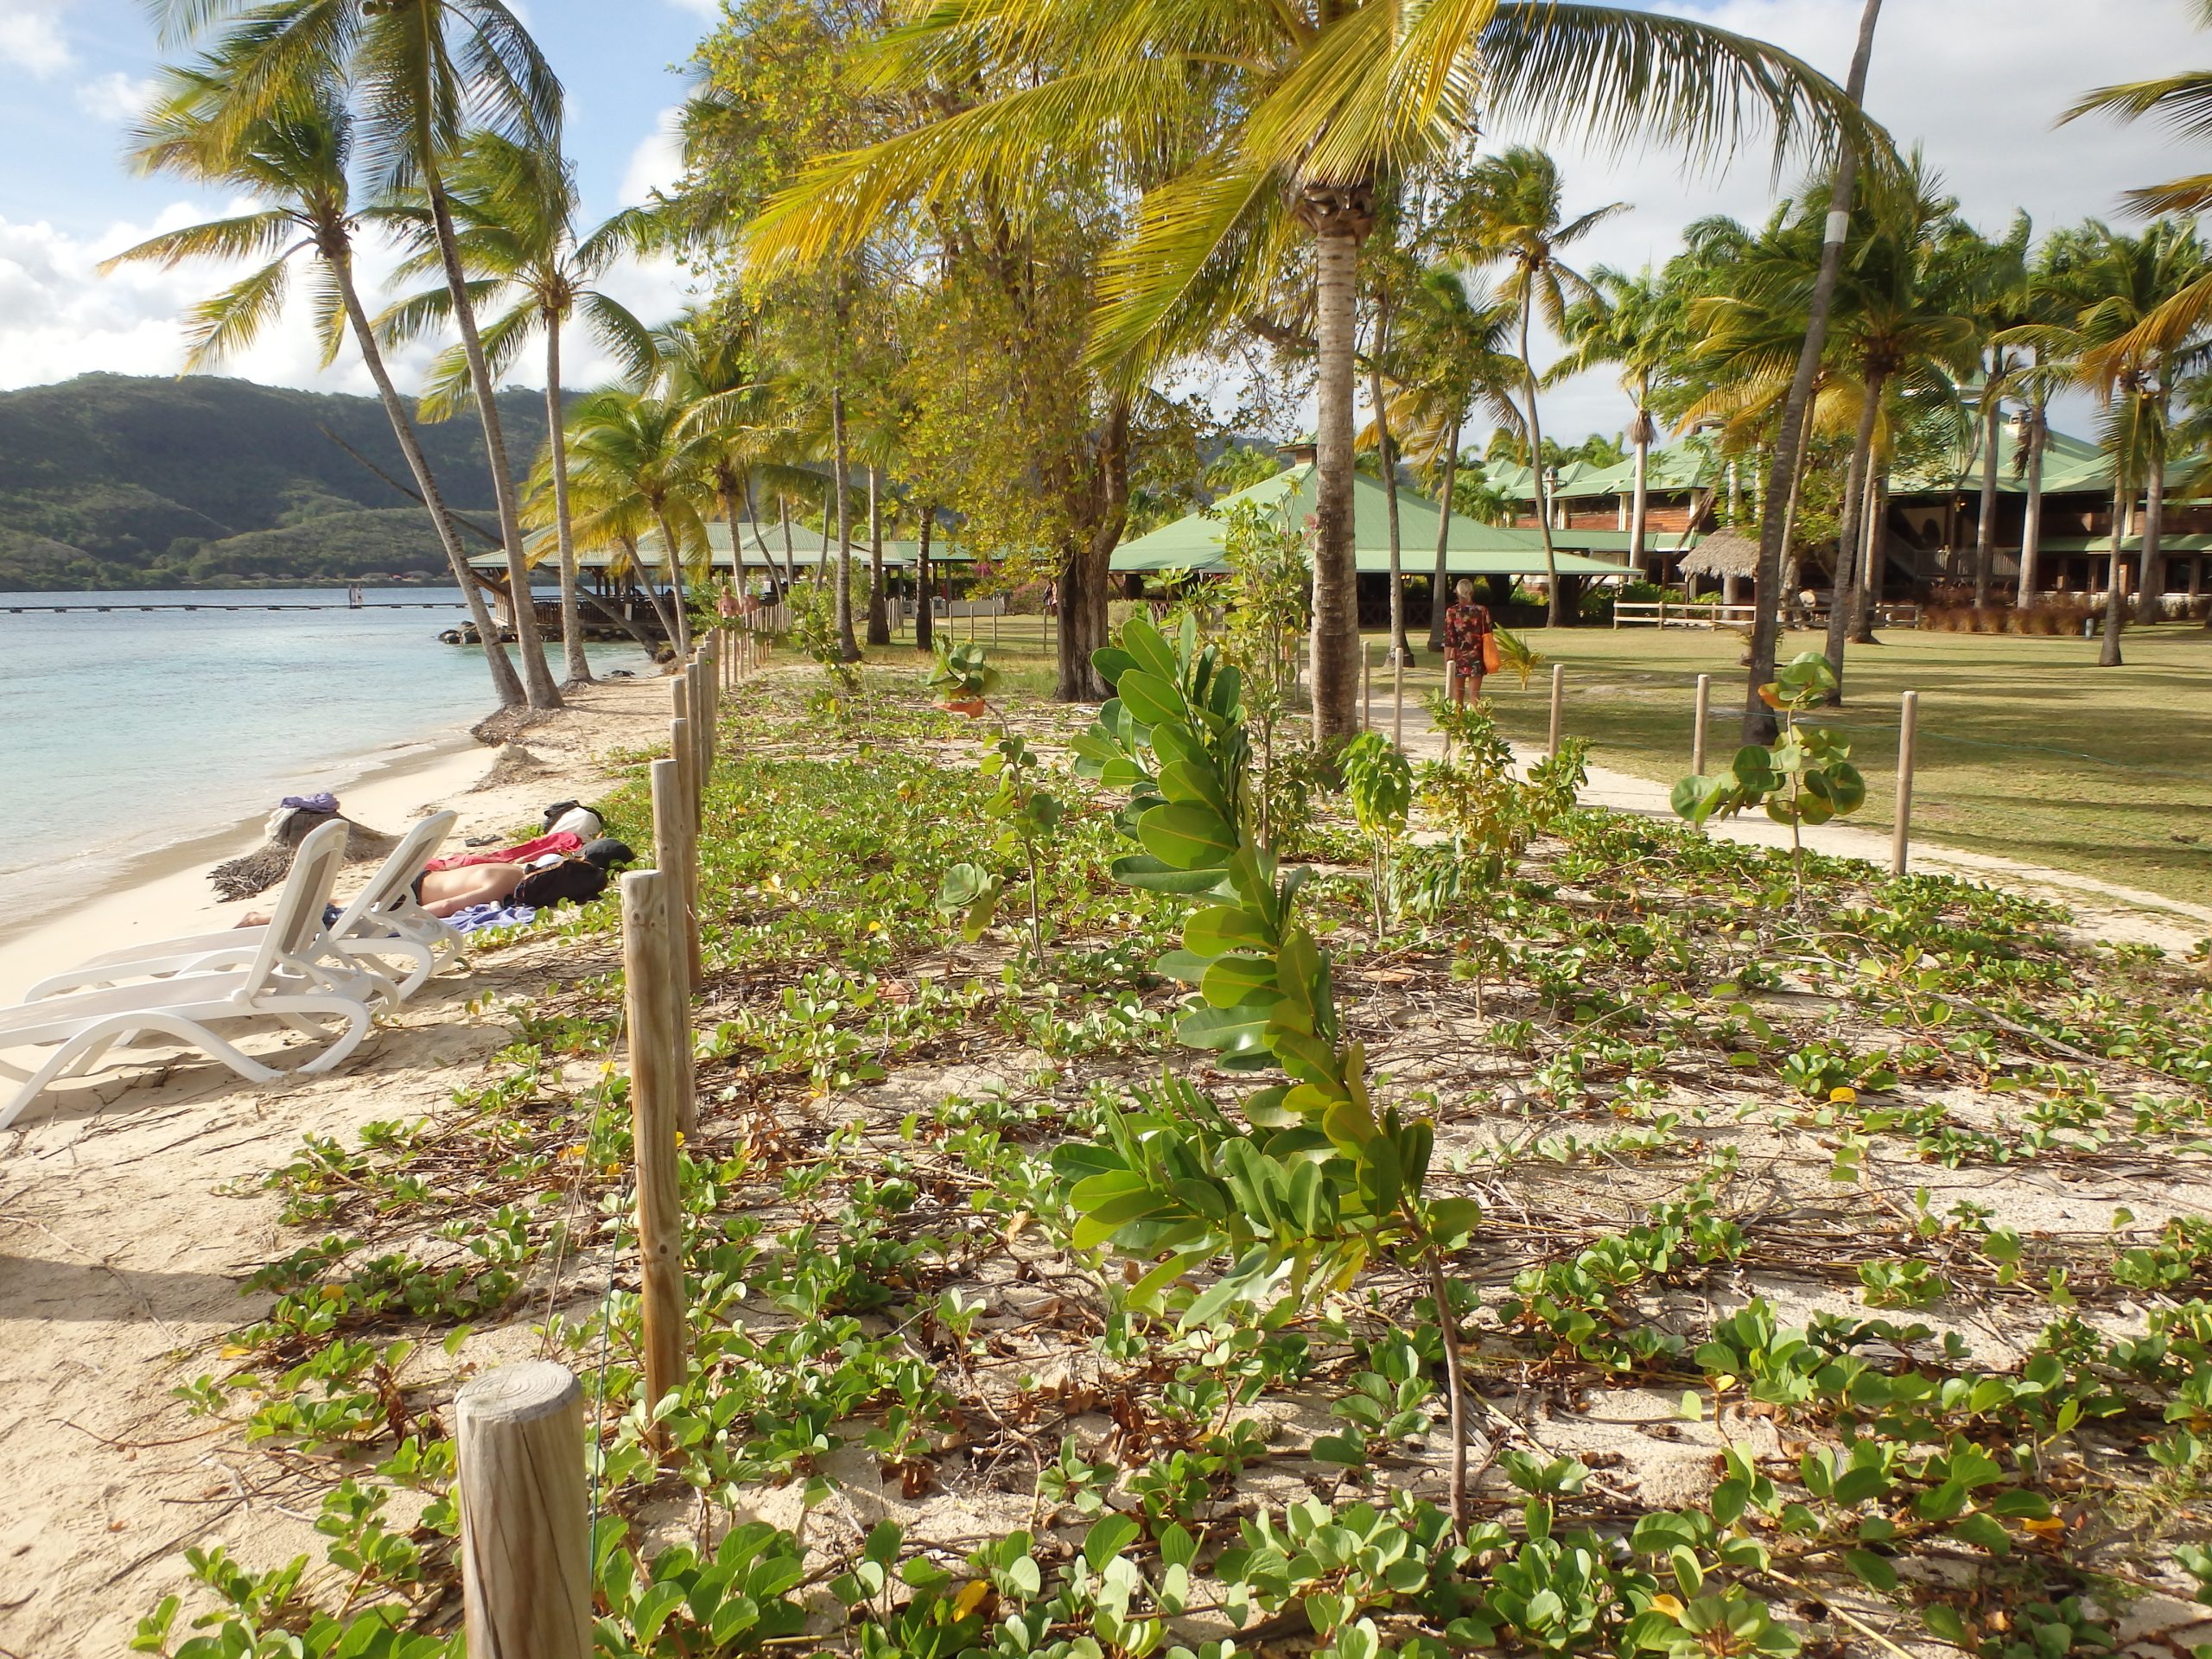 Périmètre de restauration de la végétation sur l’arrière-plage, mis en place avec l’appui de l’ONF dans le but de réduire l’érosion de la plage.